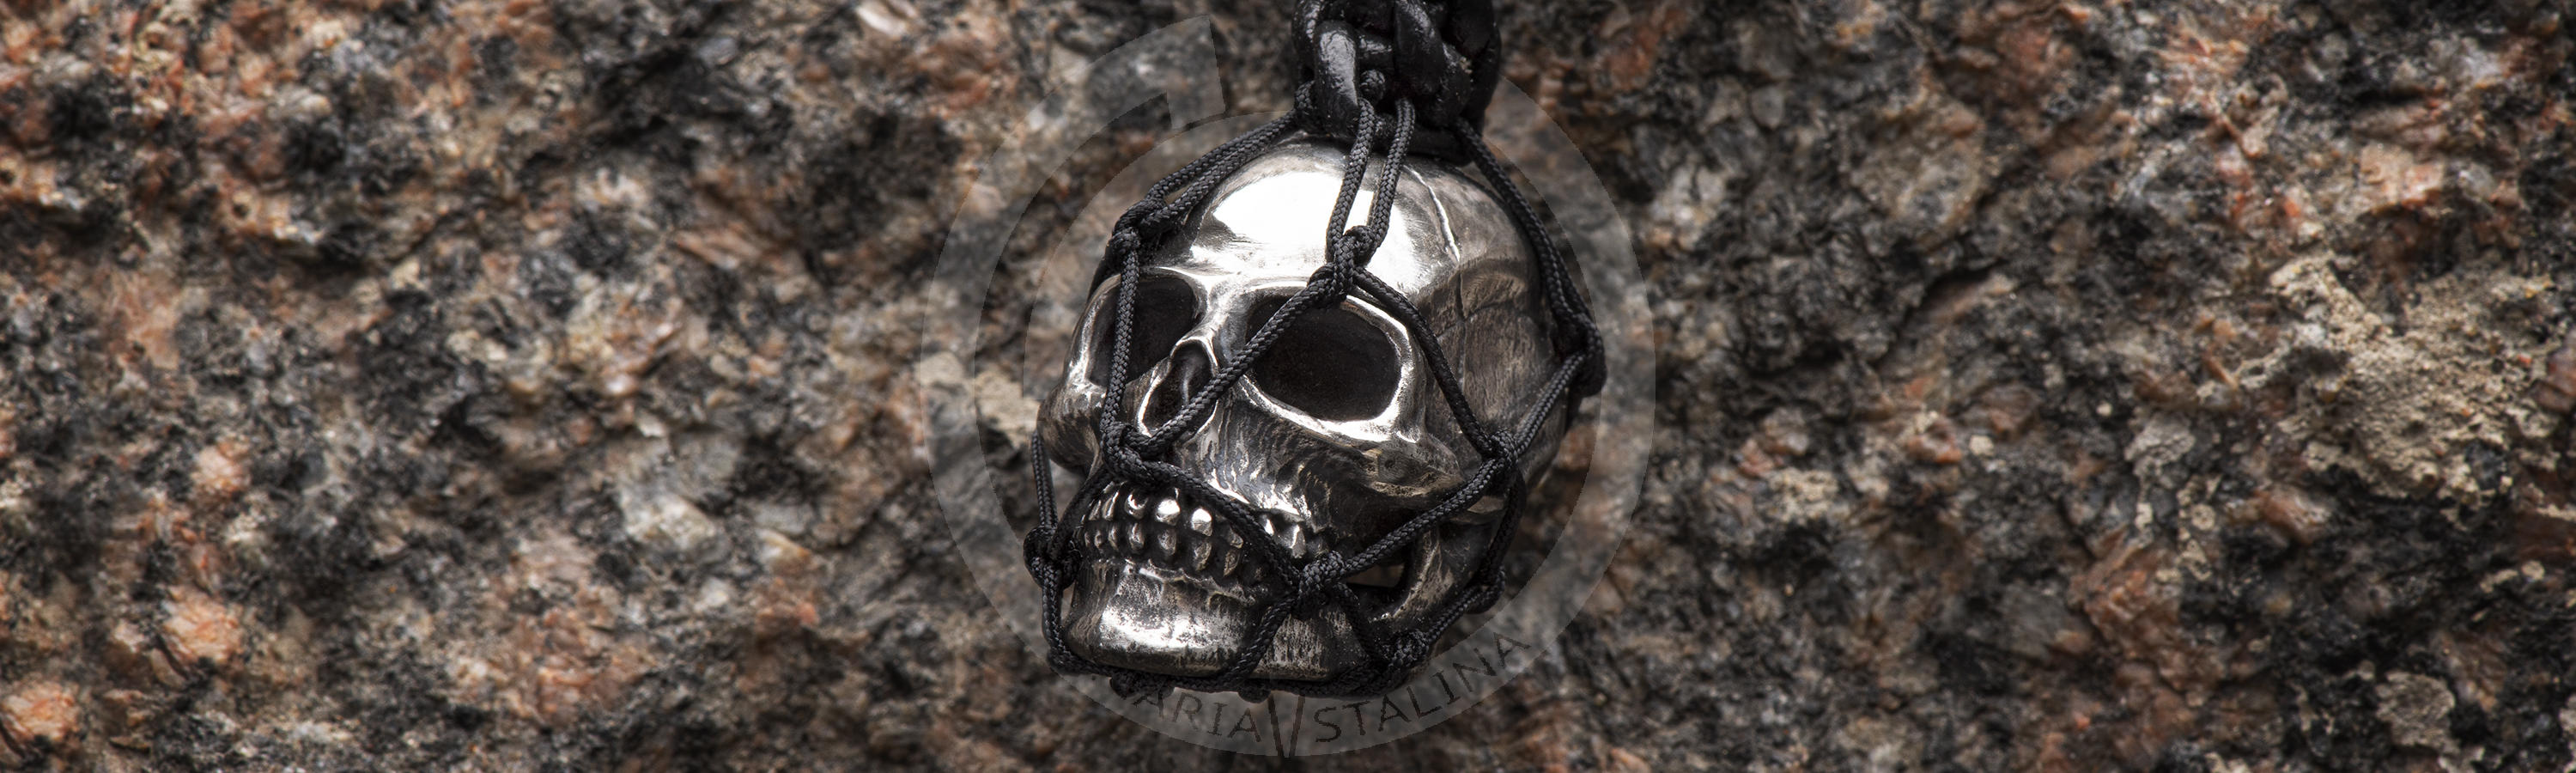 Metal Skull Key holder handmade work by Hidetoshi Nakayama